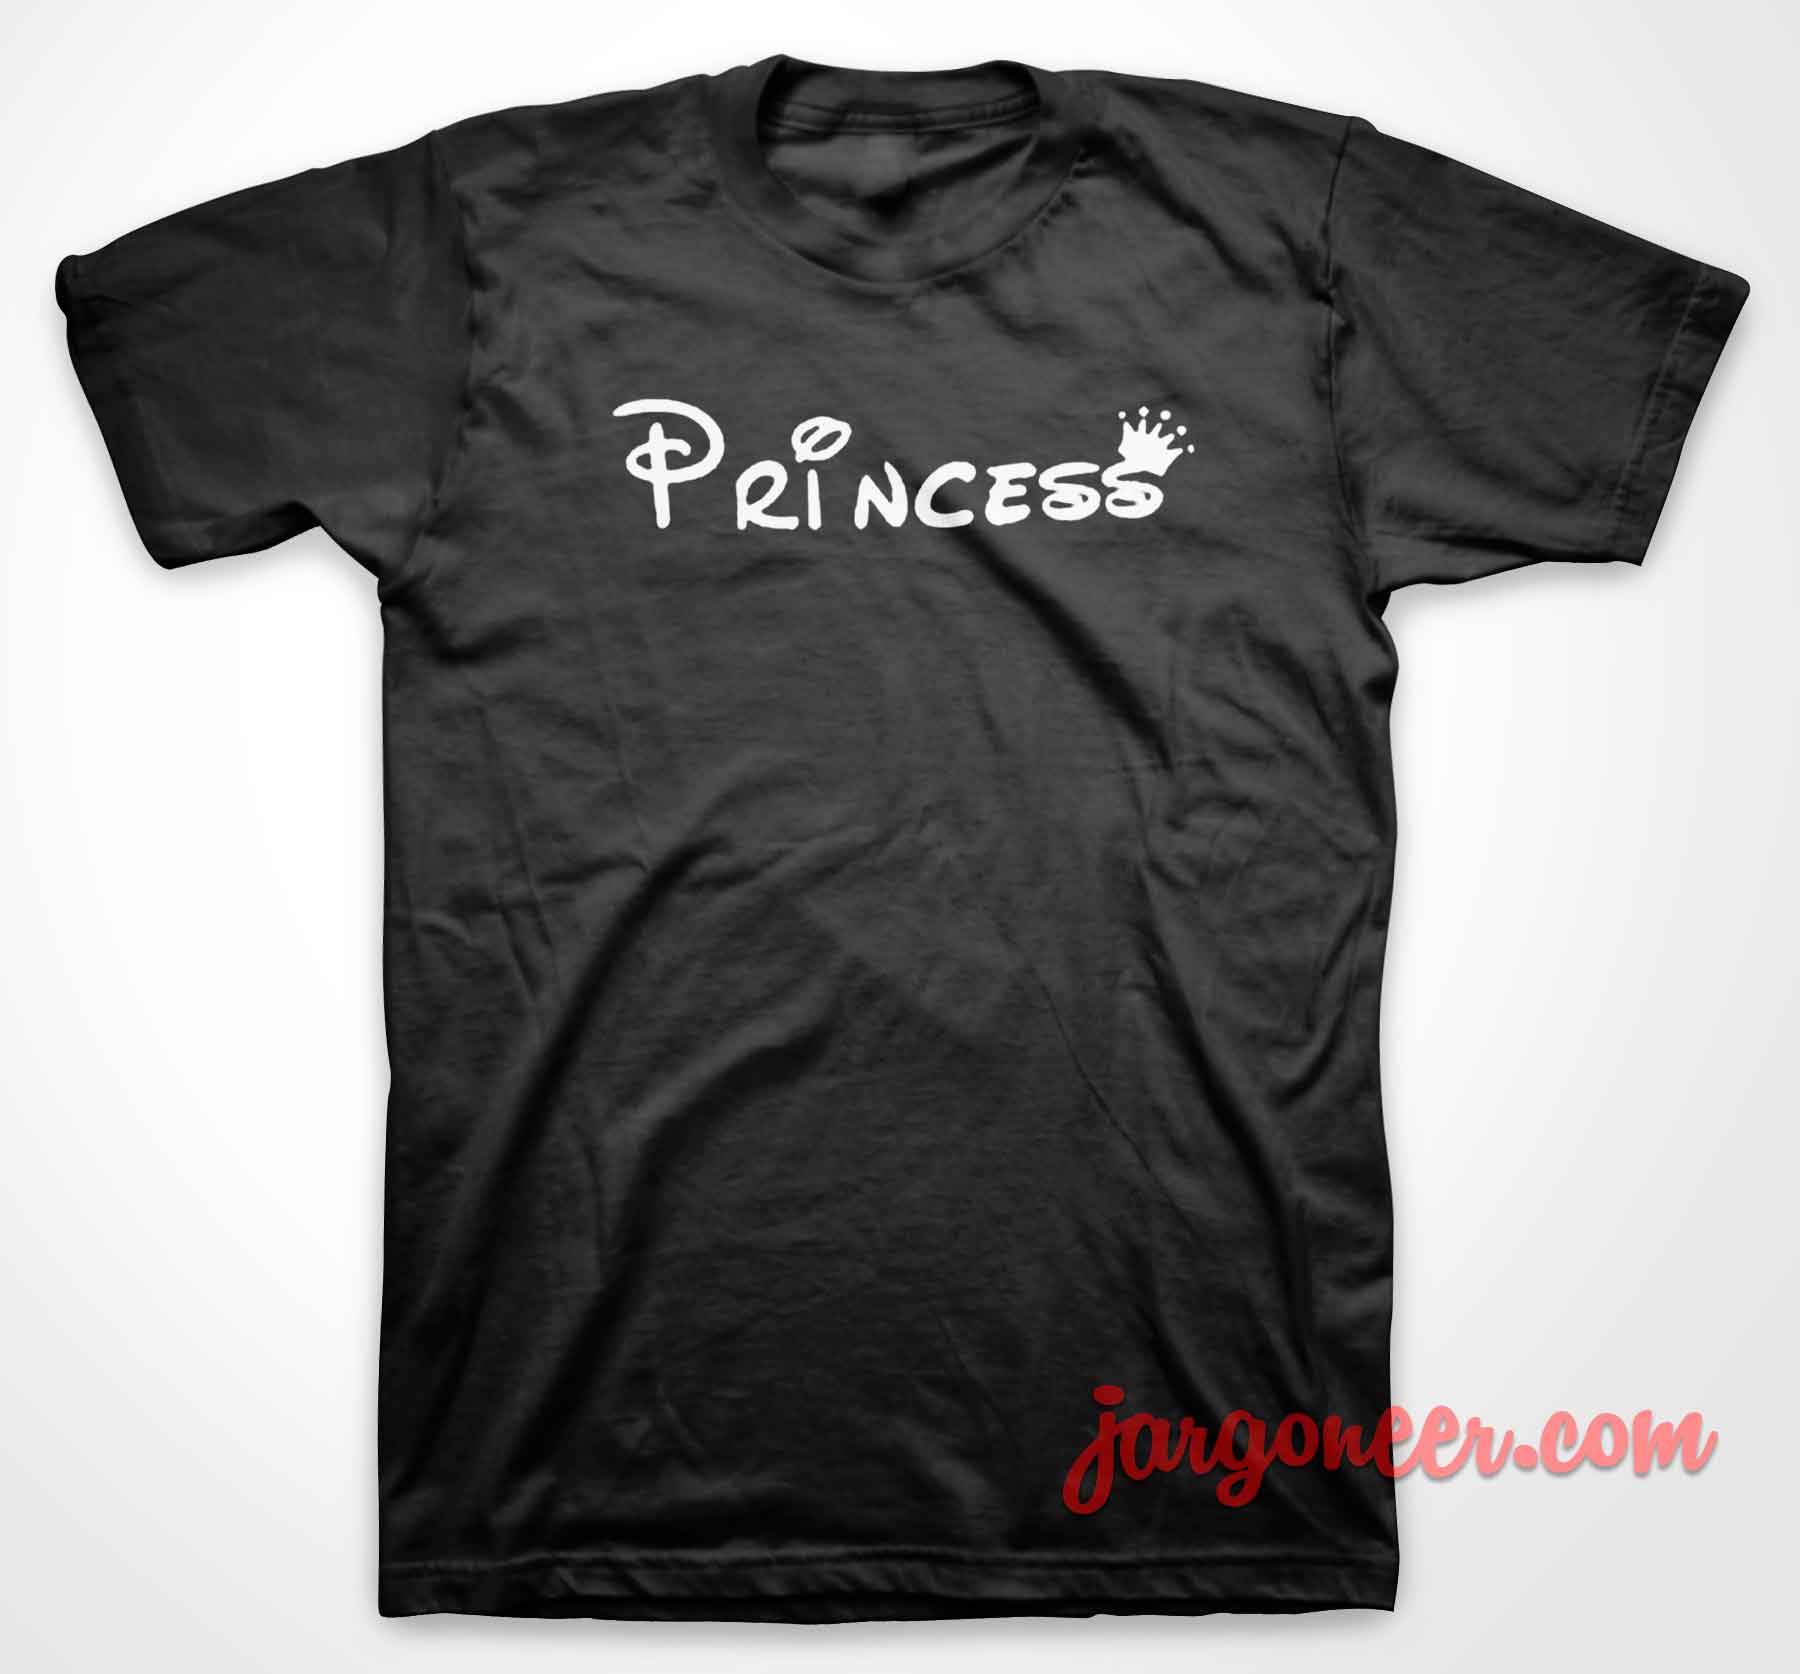 Princess Disney - Shop Unique Graphic Cool Shirt Designs